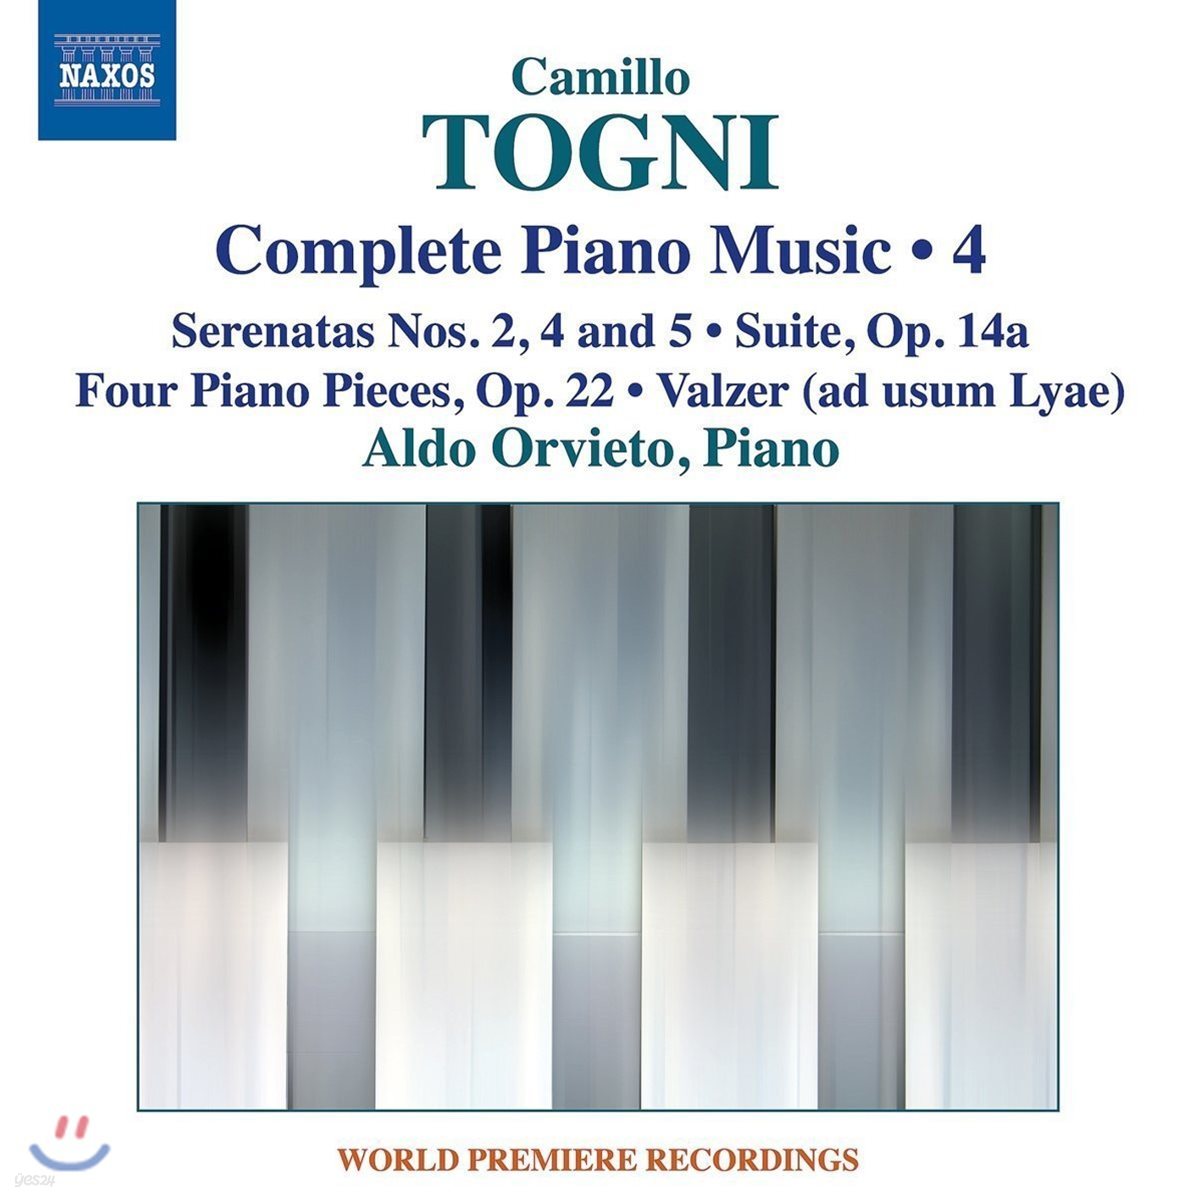 Aldo Orvieto 카밀로 토니: 피아노 작품 전곡 4집 - 세레나타, 모음곡 외 (Togni: Complete Piano Music 4)